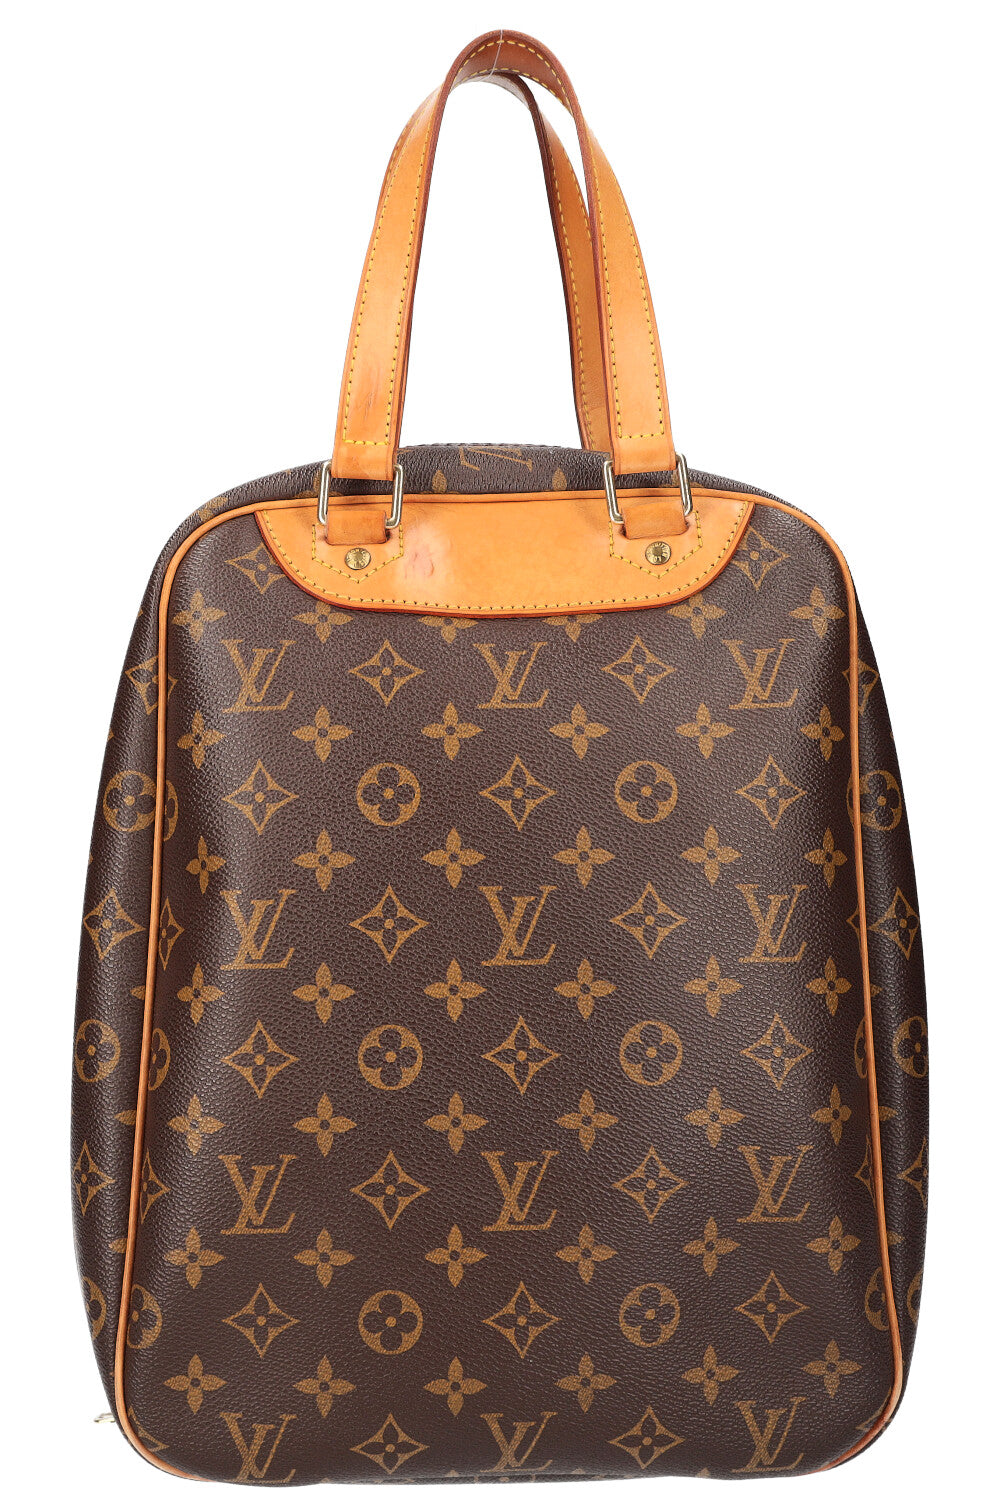 Louis Vuitton Boots - Bolsa de viaje Louis Vuitton Keepall 60 en lona  Monogram marrón y cuero natural - KICKS CREW